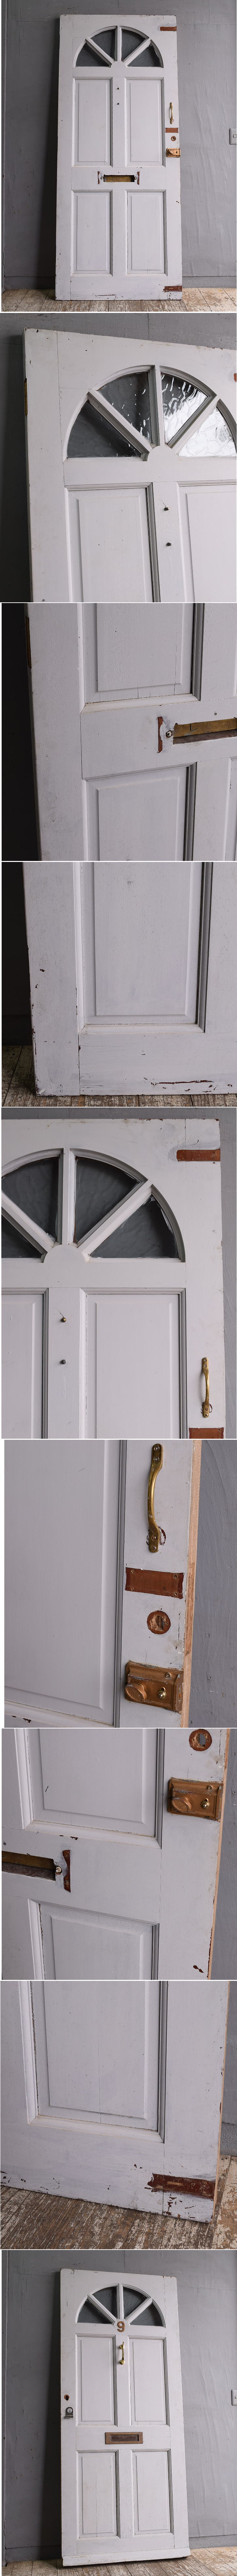 イギリス アンティーク ドア 扉 建具 12163